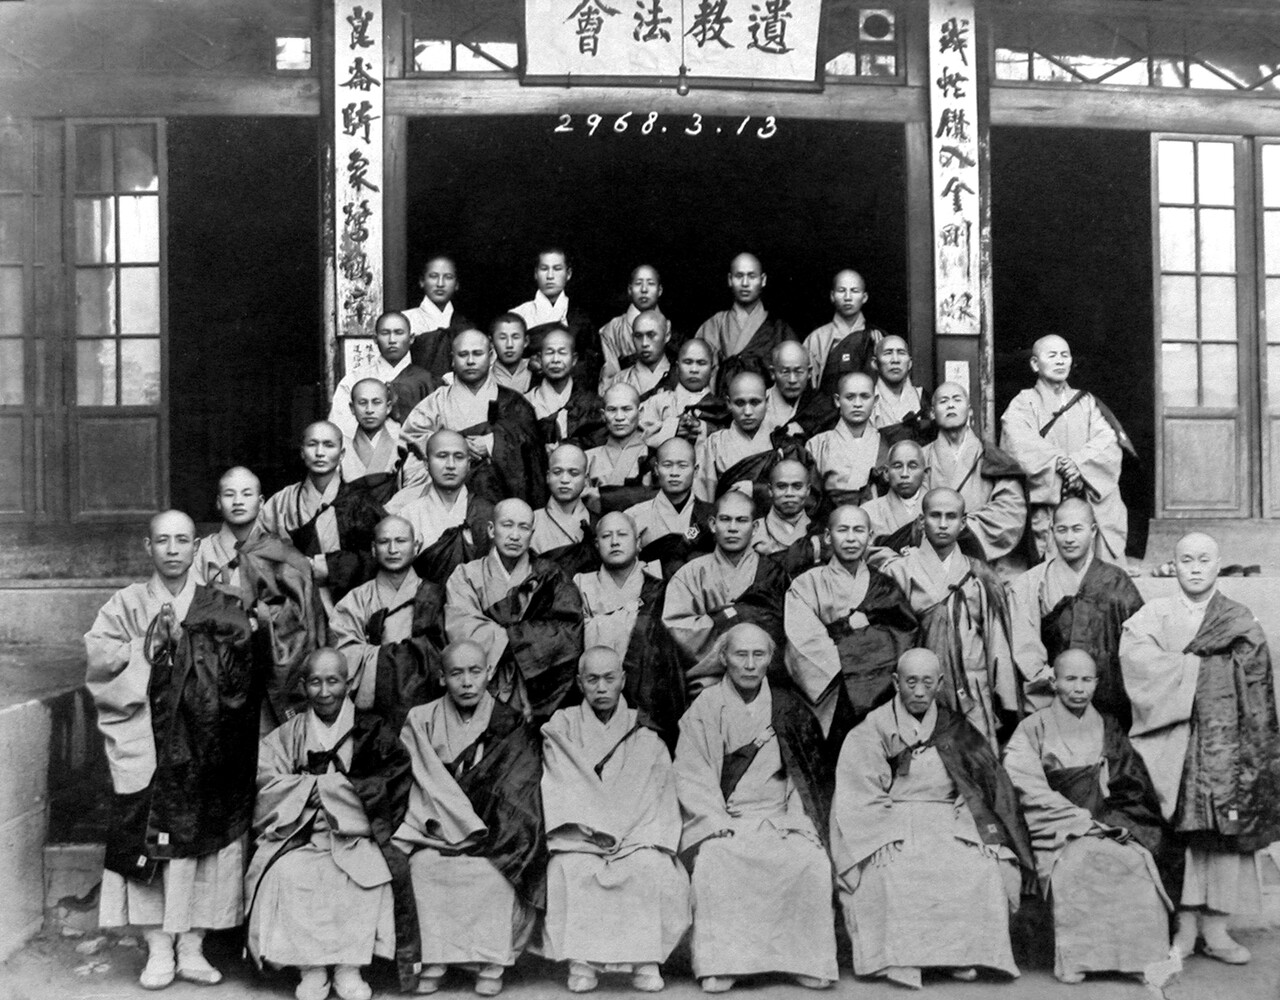 1941년 2월 26일부터 열흘 간 개최된 유교법회에 동참한 대중들.